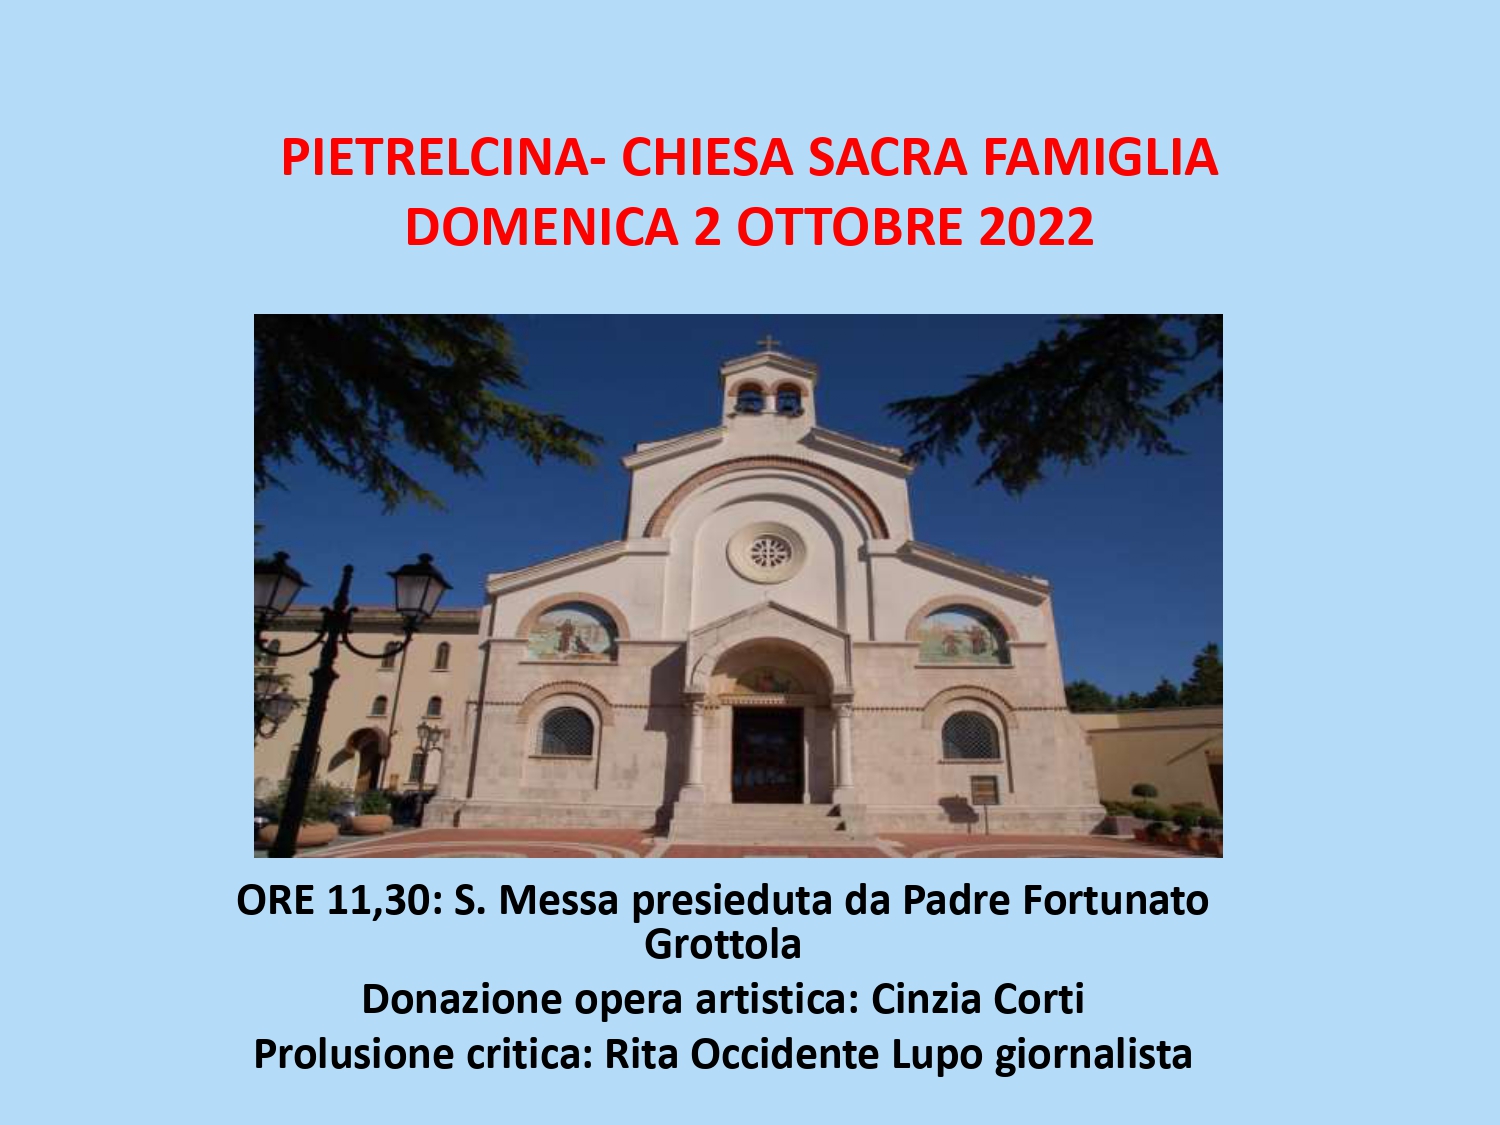 Pietrelcina: al Convento donazione opera artistica su San Pio di Cinzia Corti